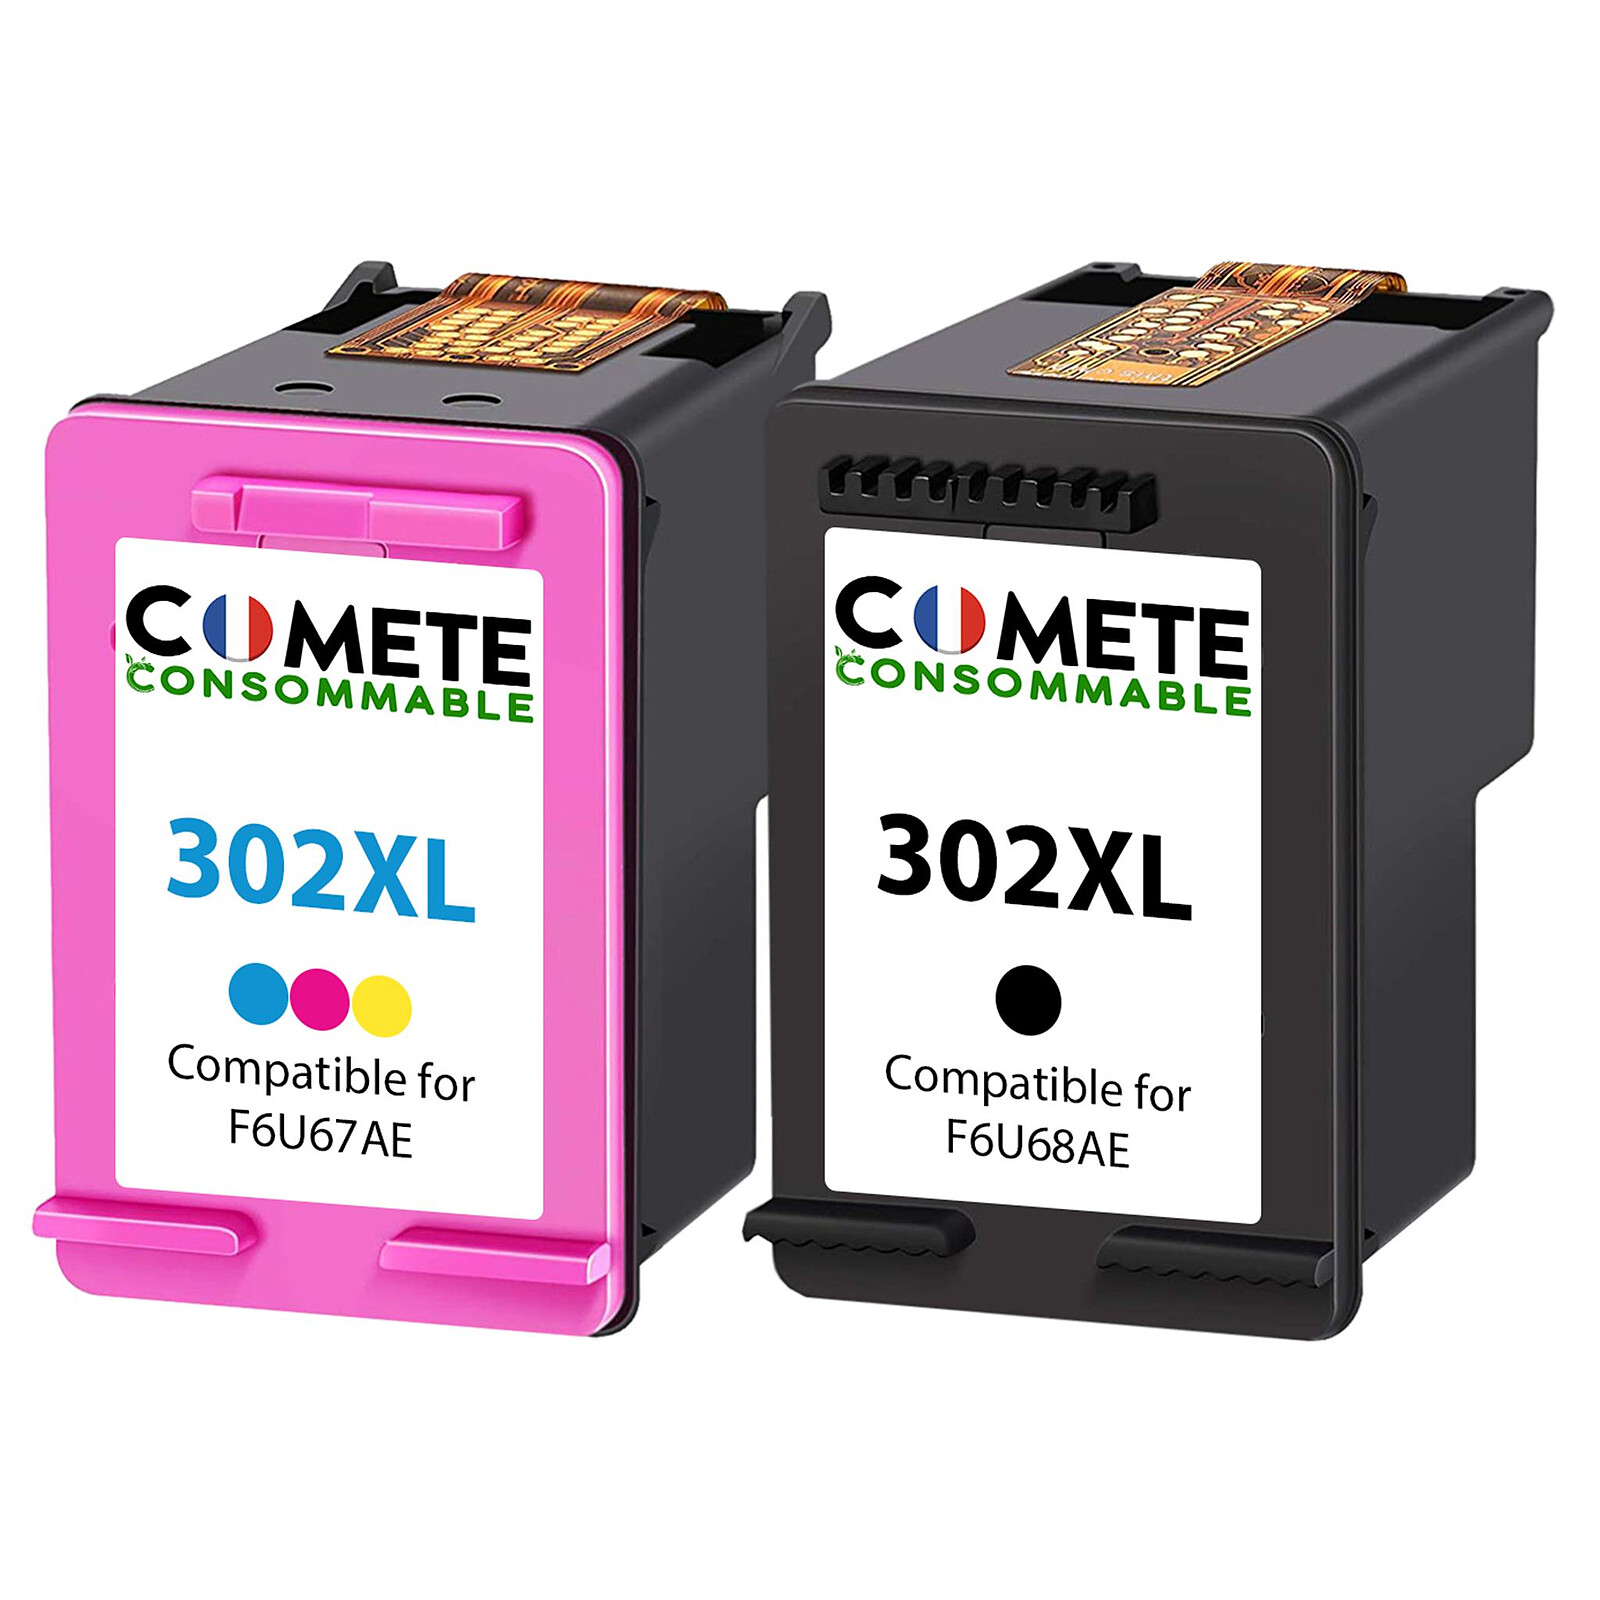 COMETE - 302XL - 2 Cartouches compatibles HP 302 XL 302XL - Noir et couleur  - Maque française - Cartouche imprimante - LDLC